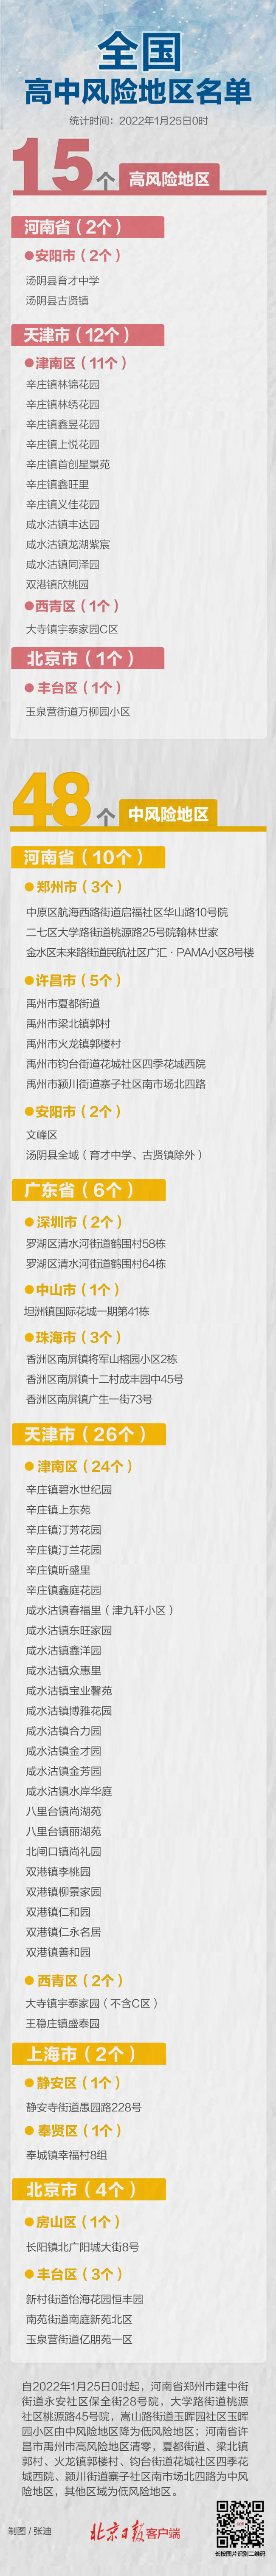 地球磁场90多万倍！中国“稳态强磁场”破世界纪录 - Baidu Search - 百度热点 百度热点快讯